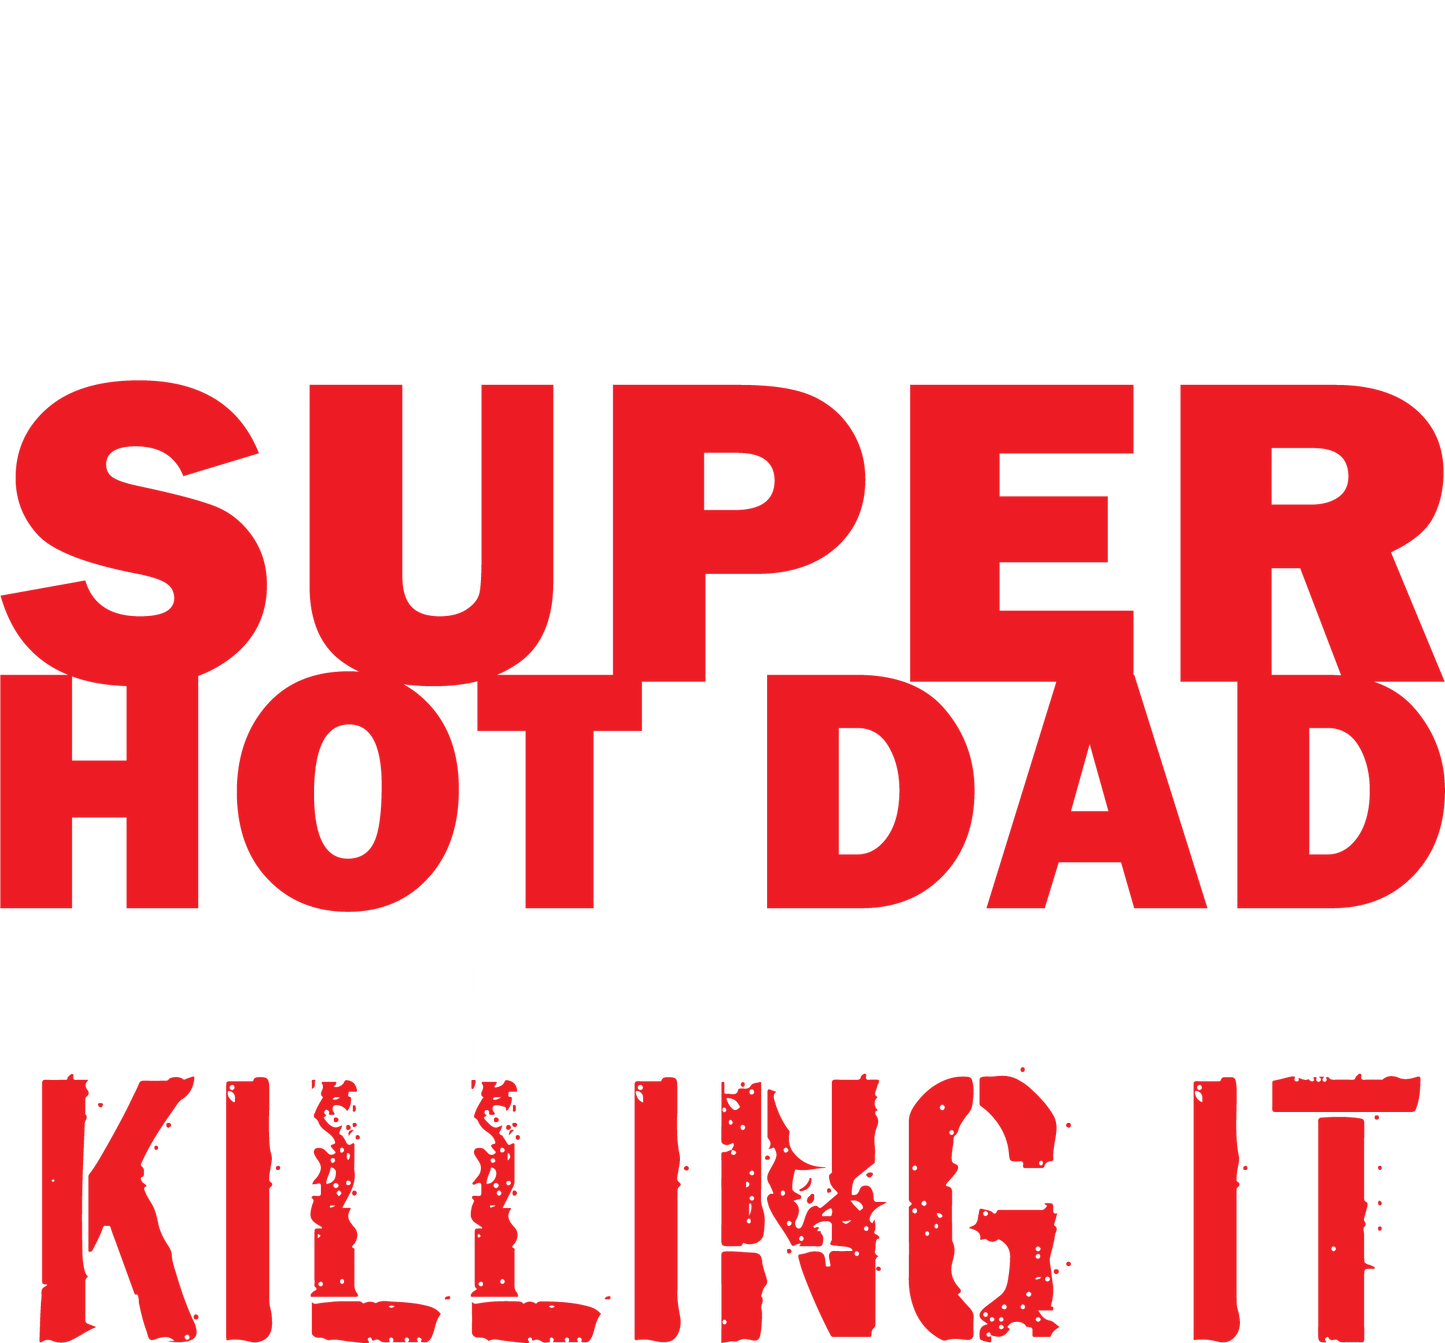 I'd Never knew, I'd be Super Hot Dad